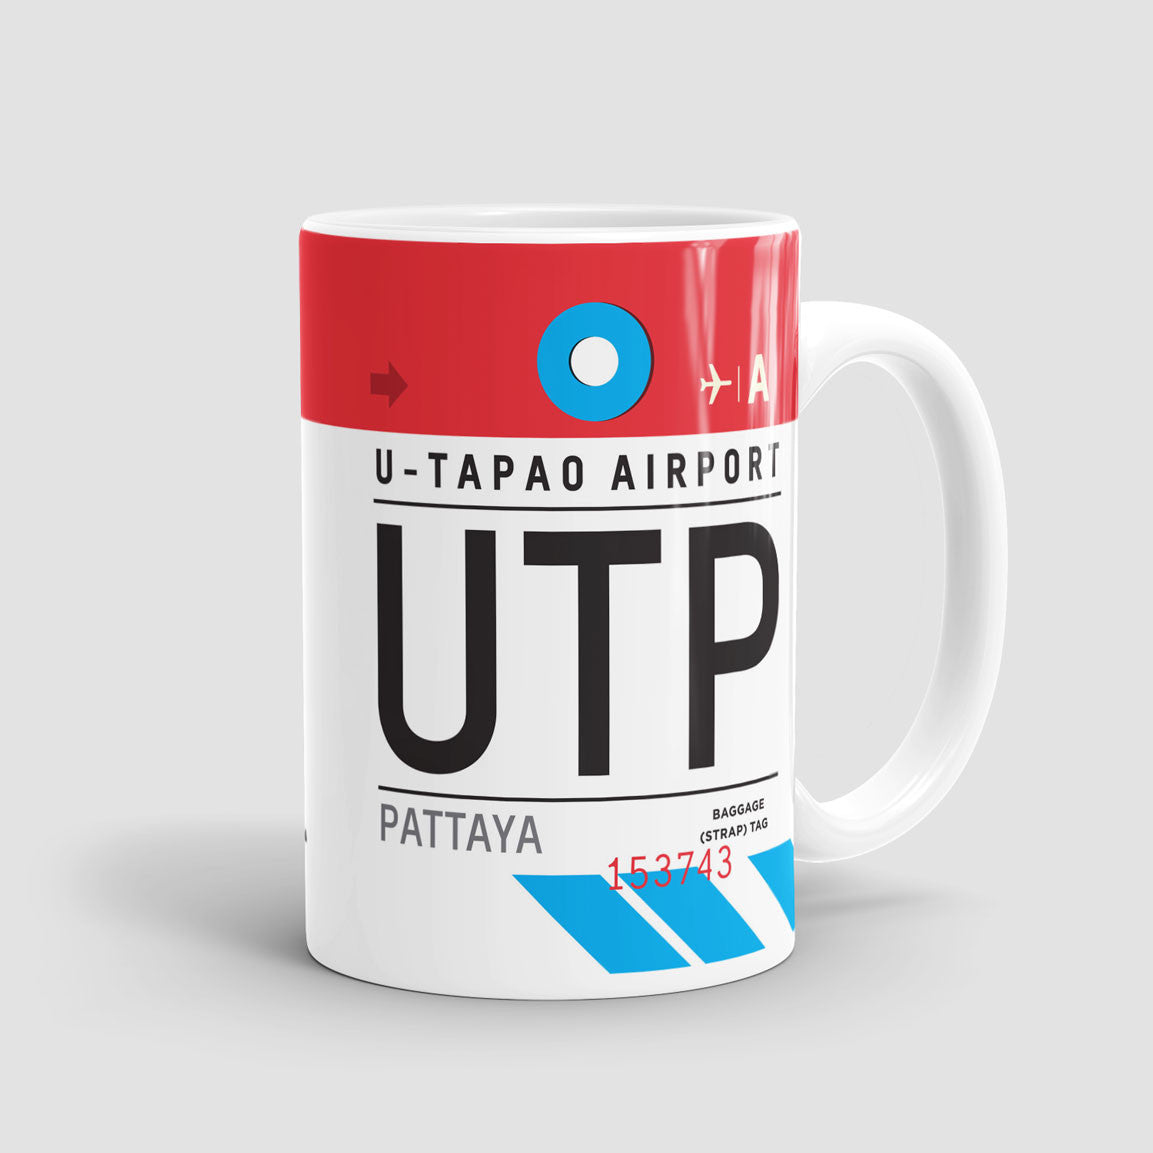 UTP - Mug - Airportag